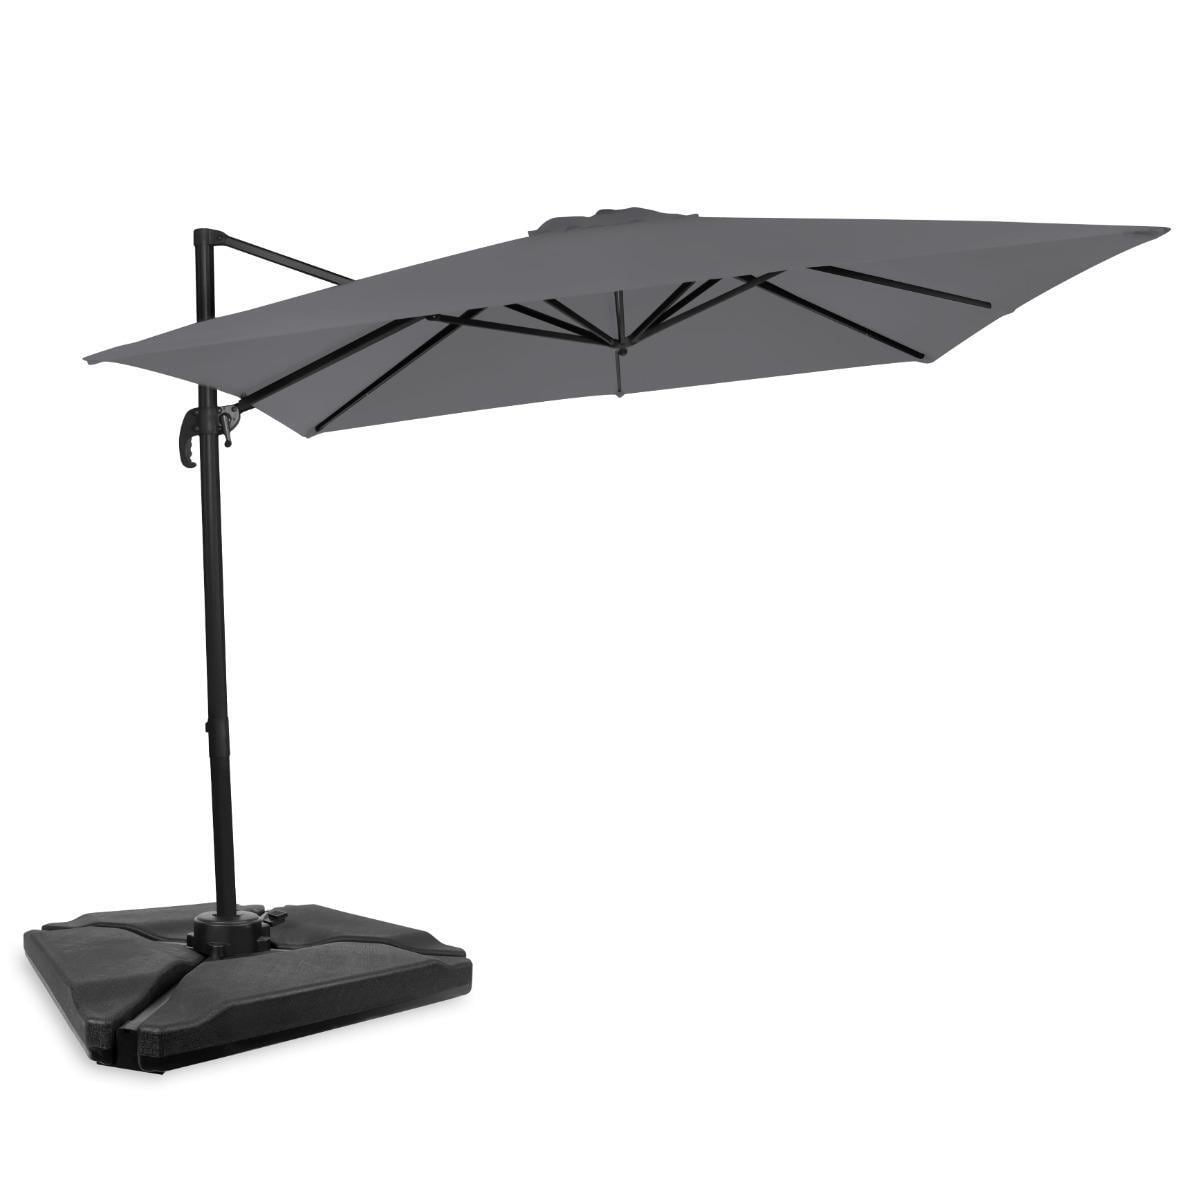 VONROC Parasoll Pisogne 300x300cm – Premium parasoll - Grå |Inkl. 4st  Parasollplattor - Elgiganten